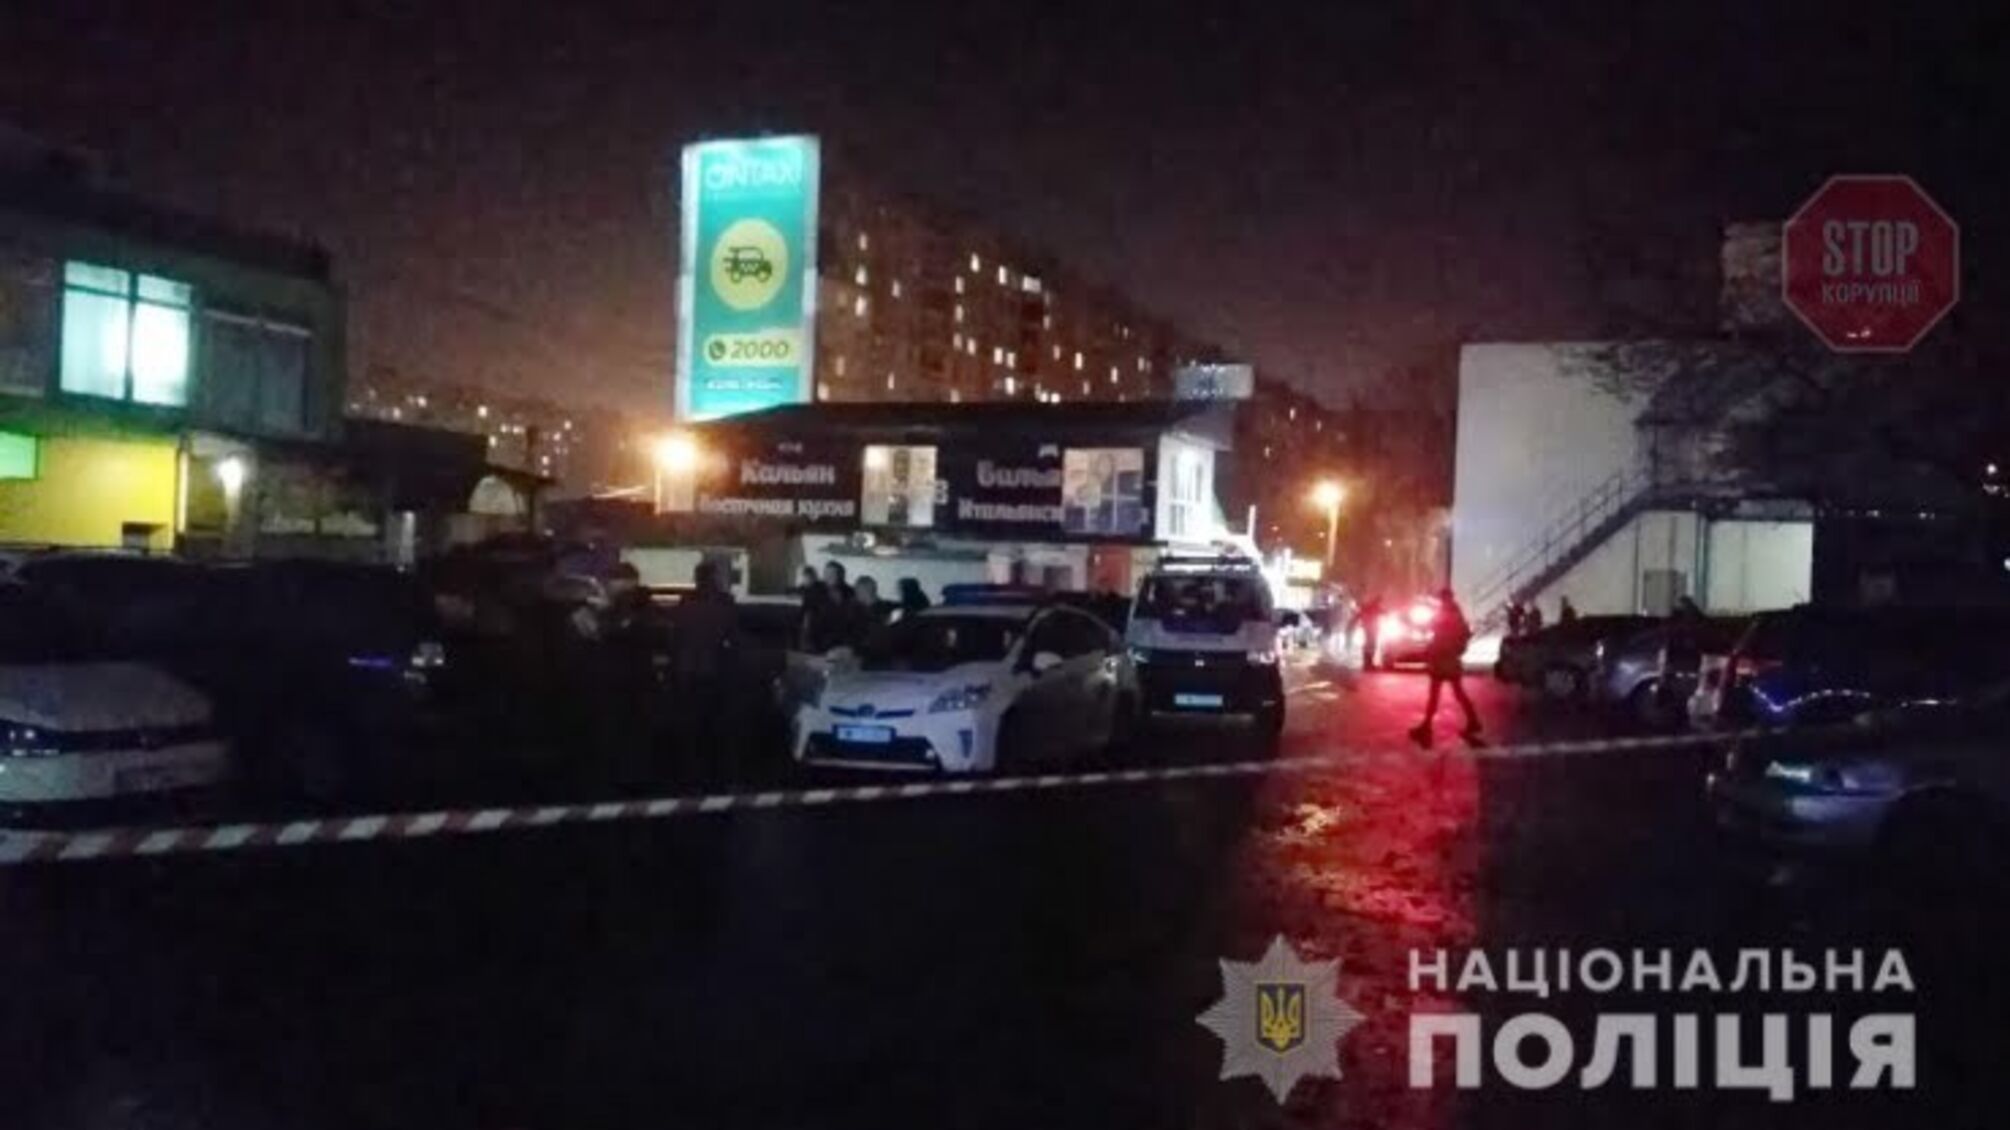 Розбірки зі зброєю у Харкові: біля спортивного клубу підстрелили чоловіка